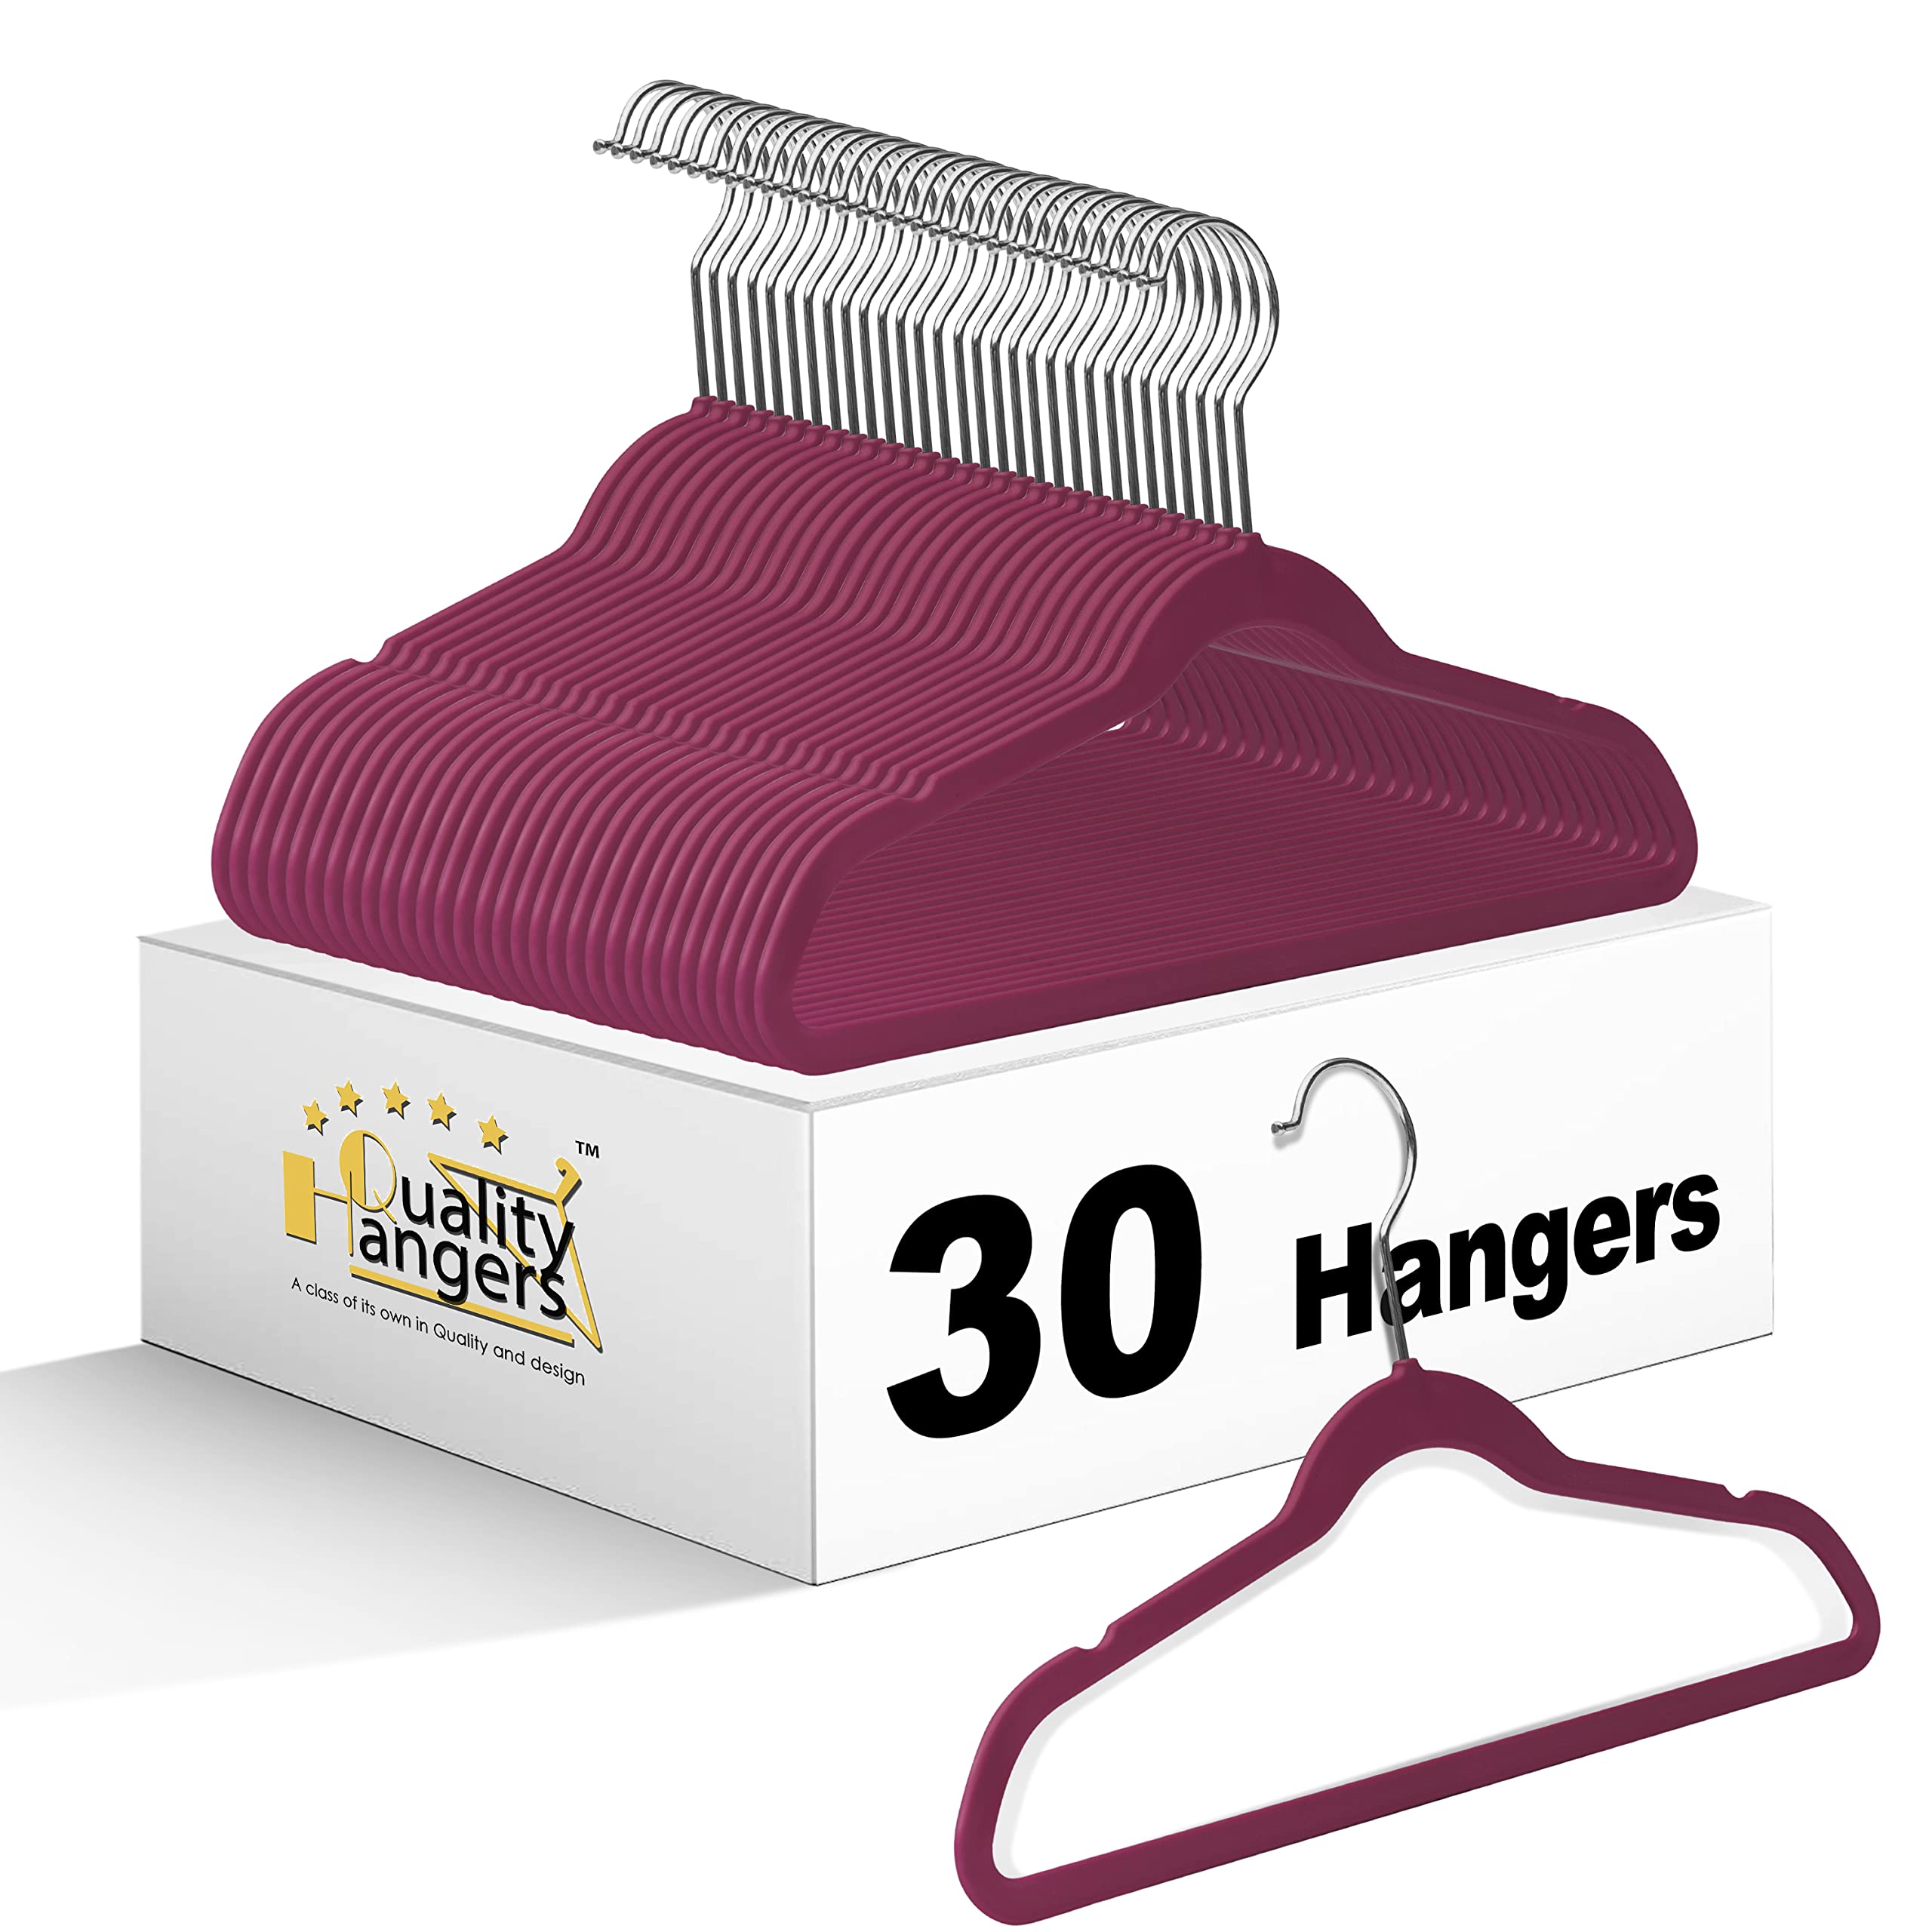 Quality Children's Plastic 30 Pack Non Velvet Non-Flocked Thin Compact Hangers Swivel Hook for Shirts Blouse Coats (Raspberry, 30)  - Like New